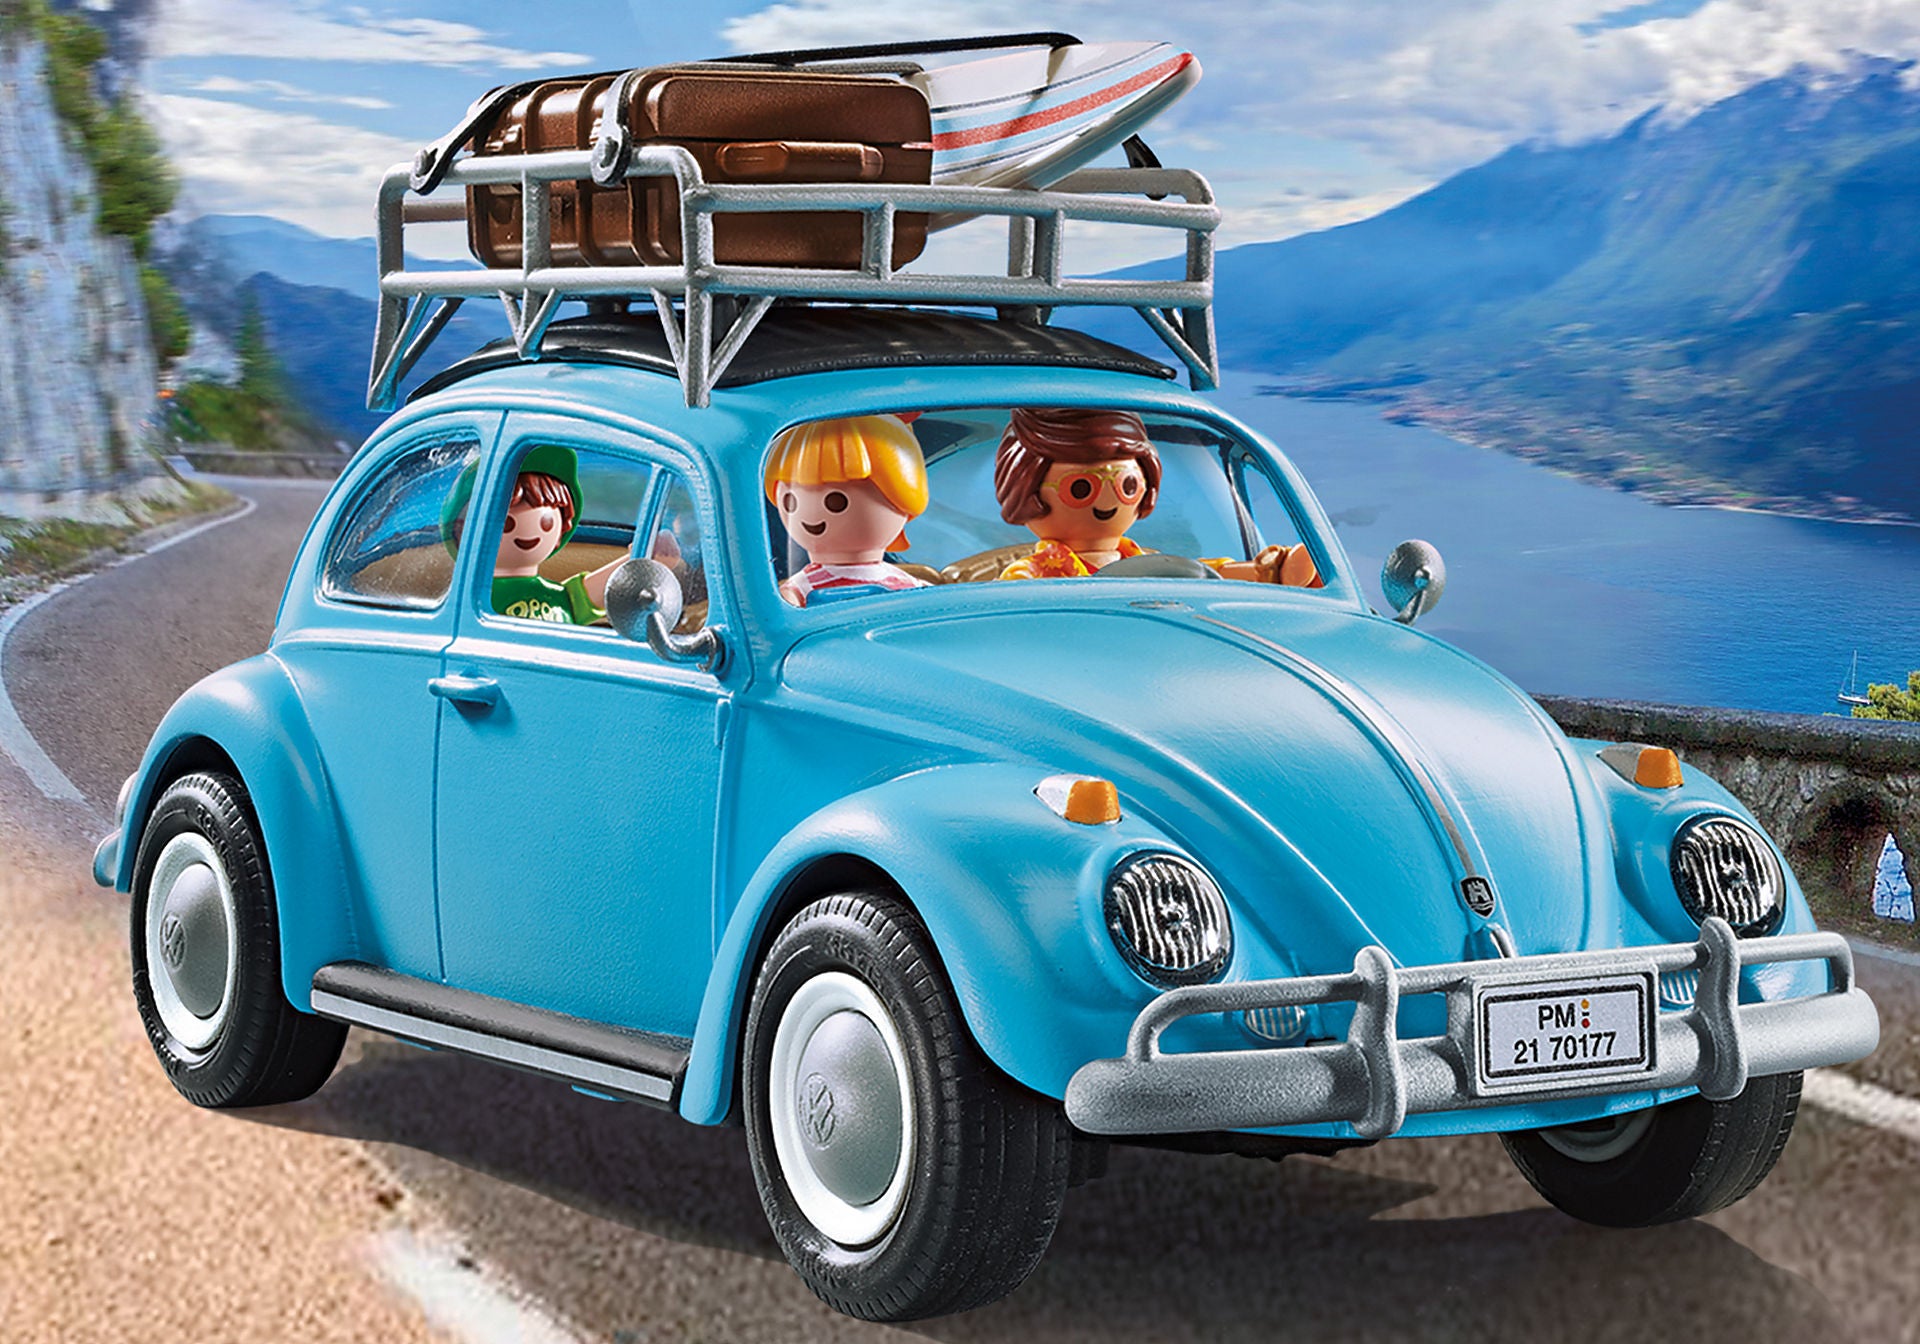 Playmobil Vehicles: Volkswagen Beetle 70177